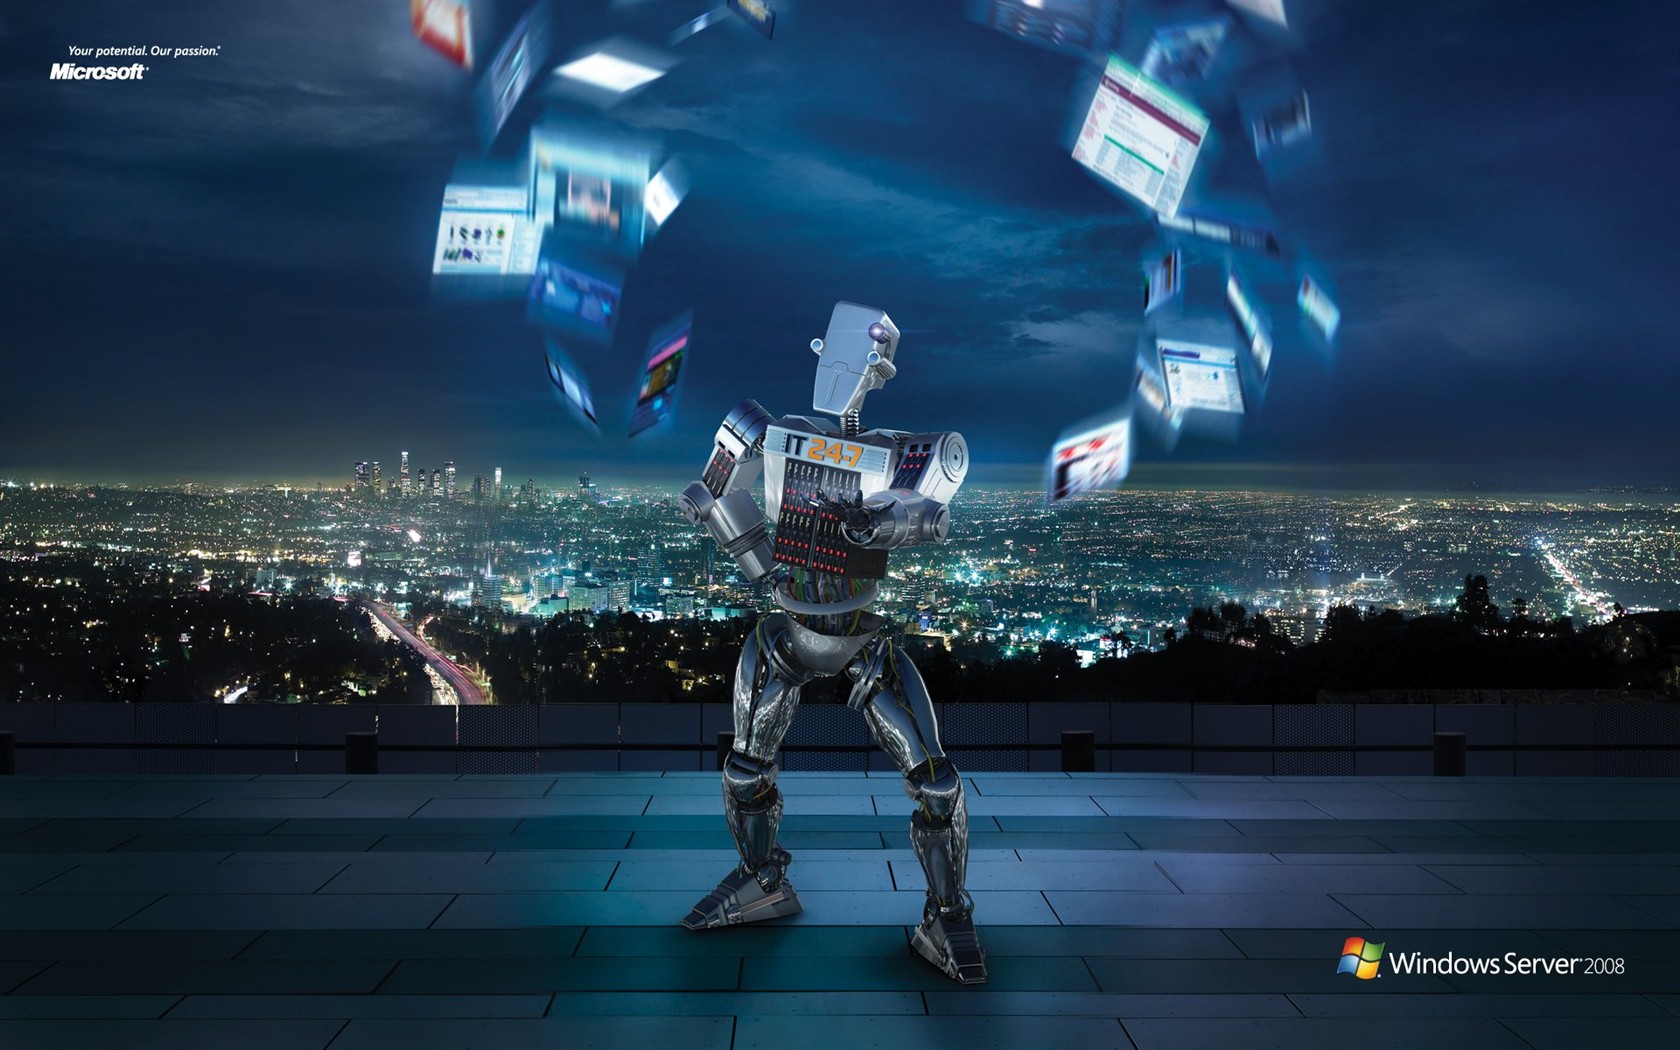 Windows IT Robot ad #1 - 1680x1050